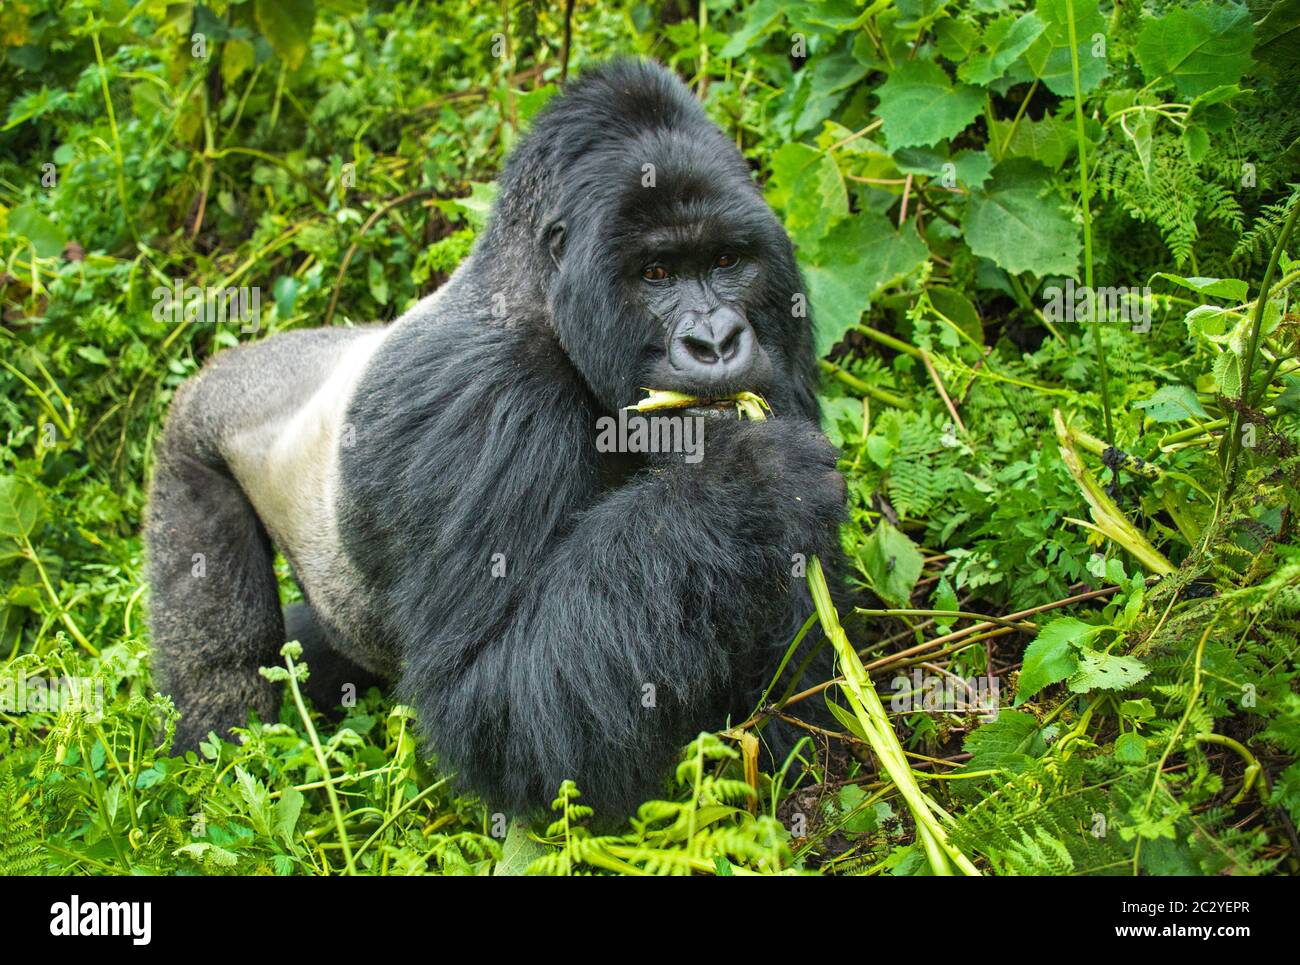 Mountain gorilla (Gorilla beringei beringei) eating plant, Rwanda, Africa Stock Photo